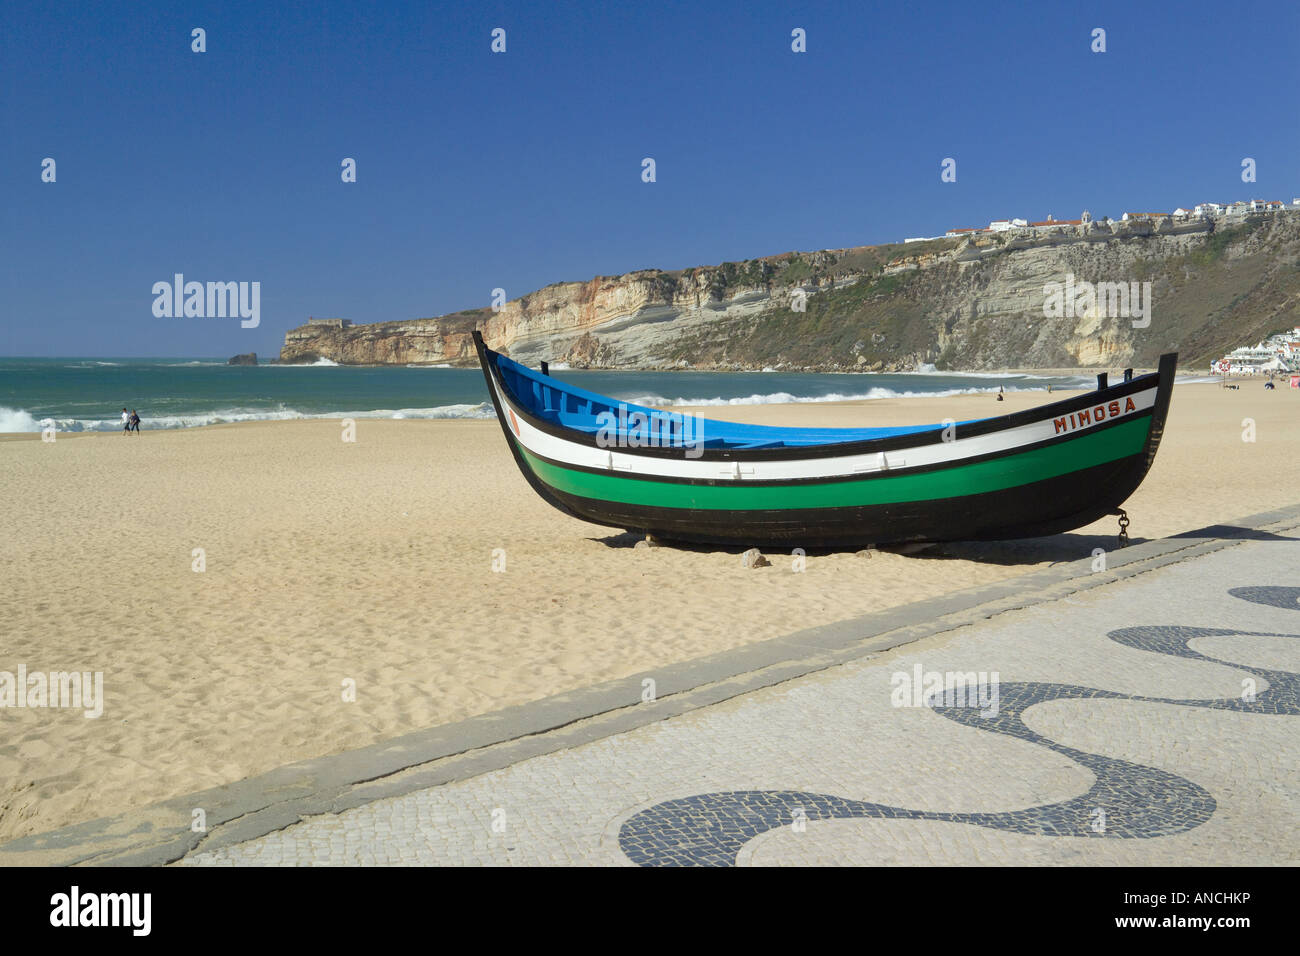 Au Portugal, la Costa da Prata, la plage de Nazaré, un bateau de pêche et de la chaussée pavée décorée typiquement portugais sur la promenade Banque D'Images